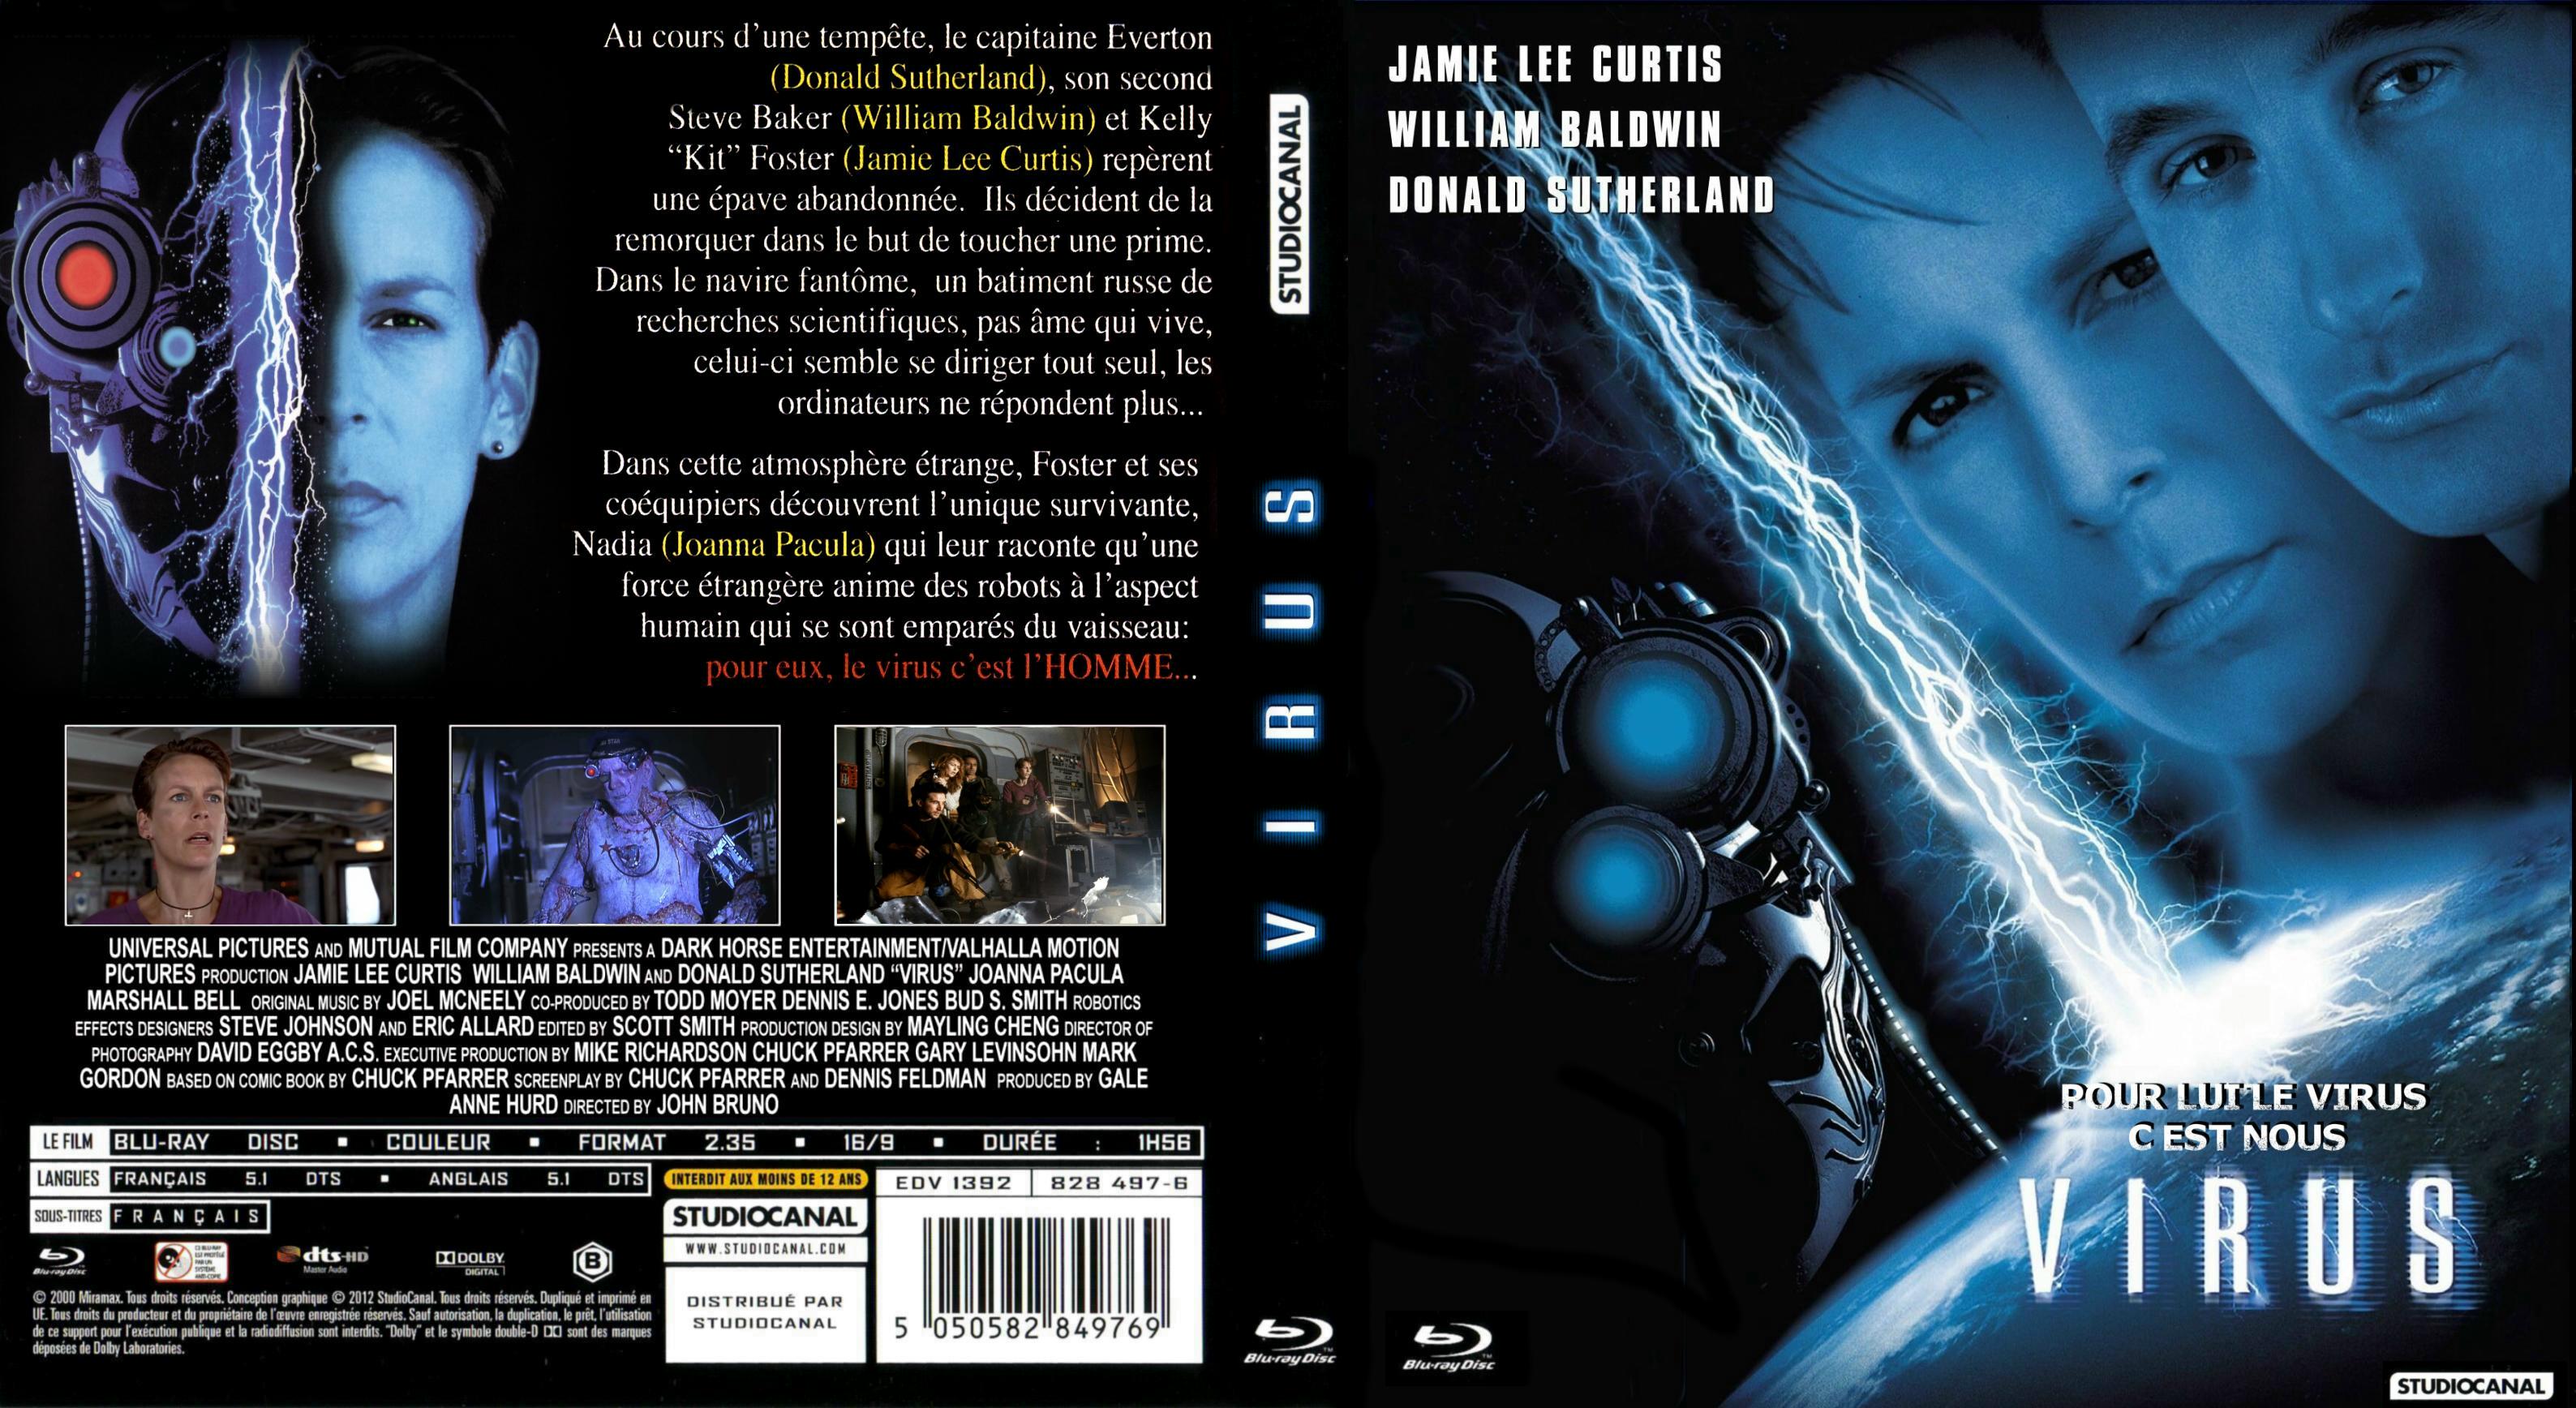 Jaquette DVD Virus (Jamie Lee Curtis) (BLU-RAY)